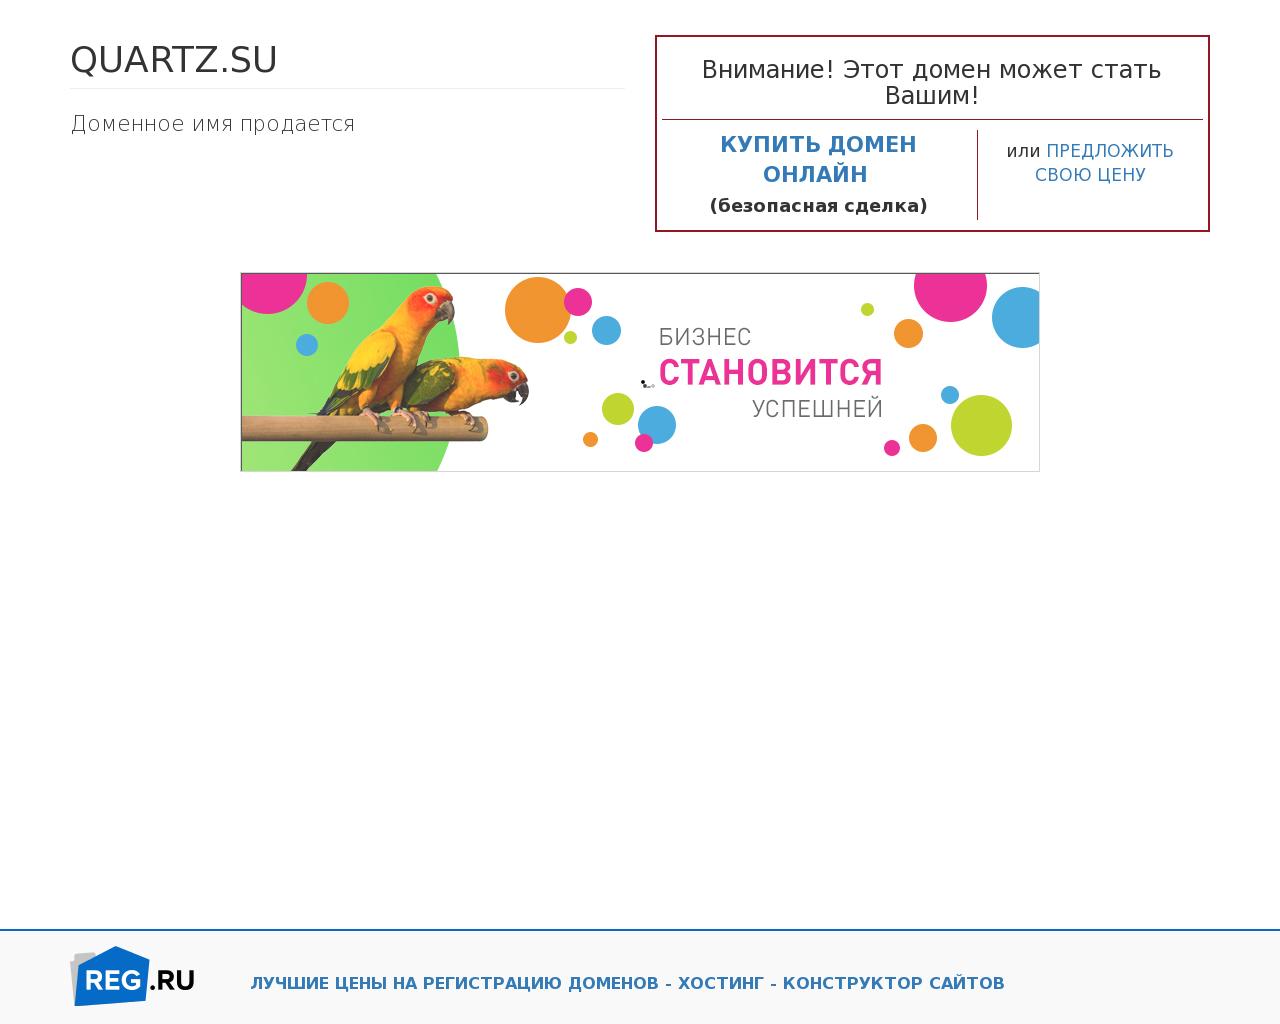 Изображение сайта quartz.su в разрешении 1280x1024